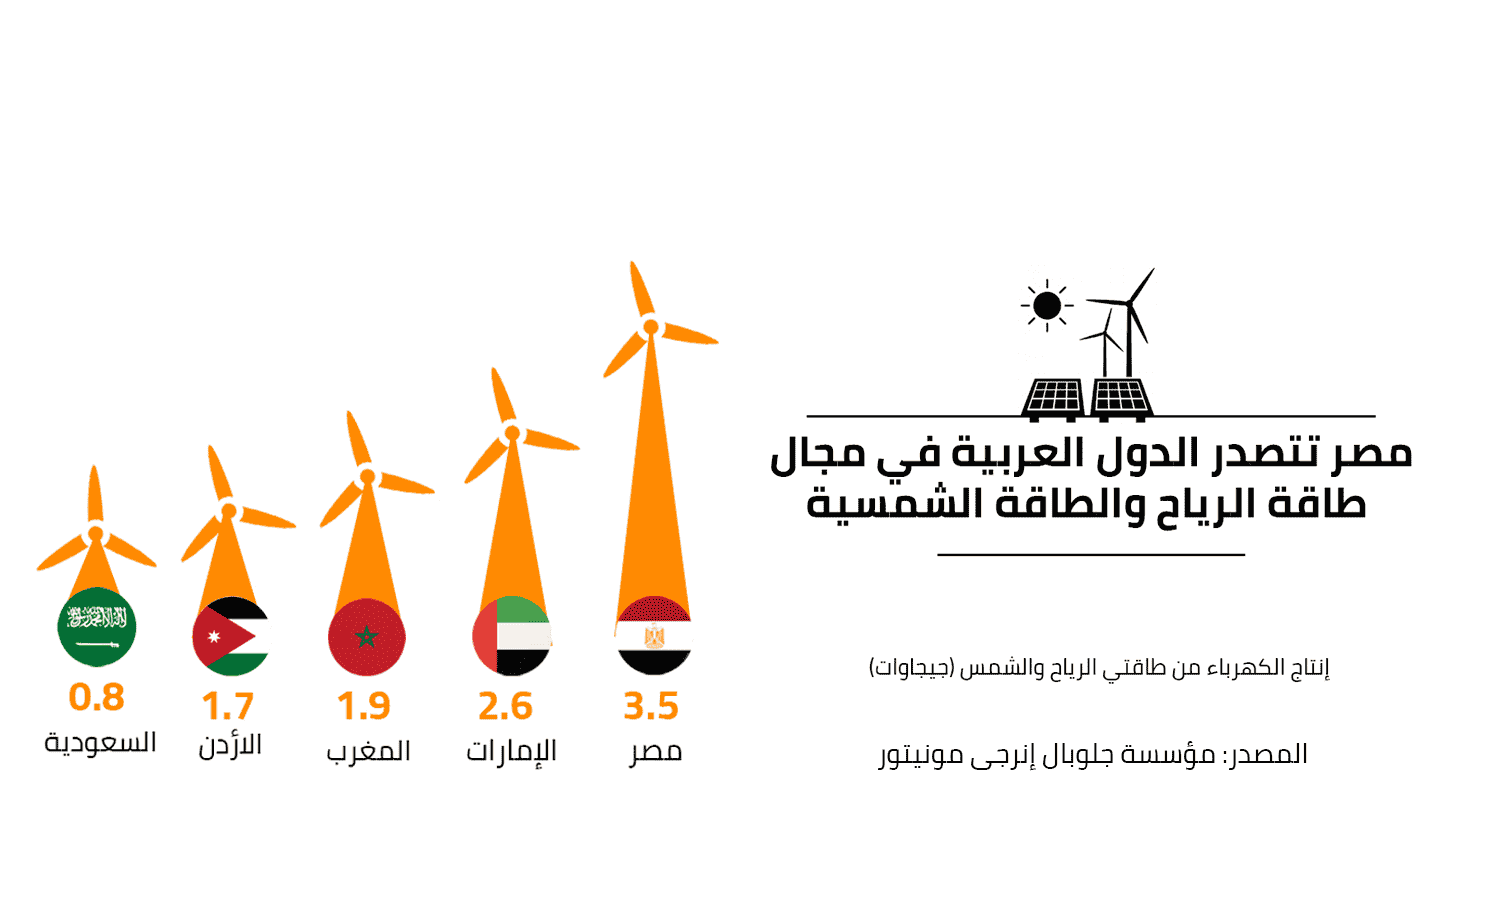 مصر أعلى الدول العربية انتاجا للكهرباء من الطاقة الشمسية وطاقة الرياح بيونيو 2022
